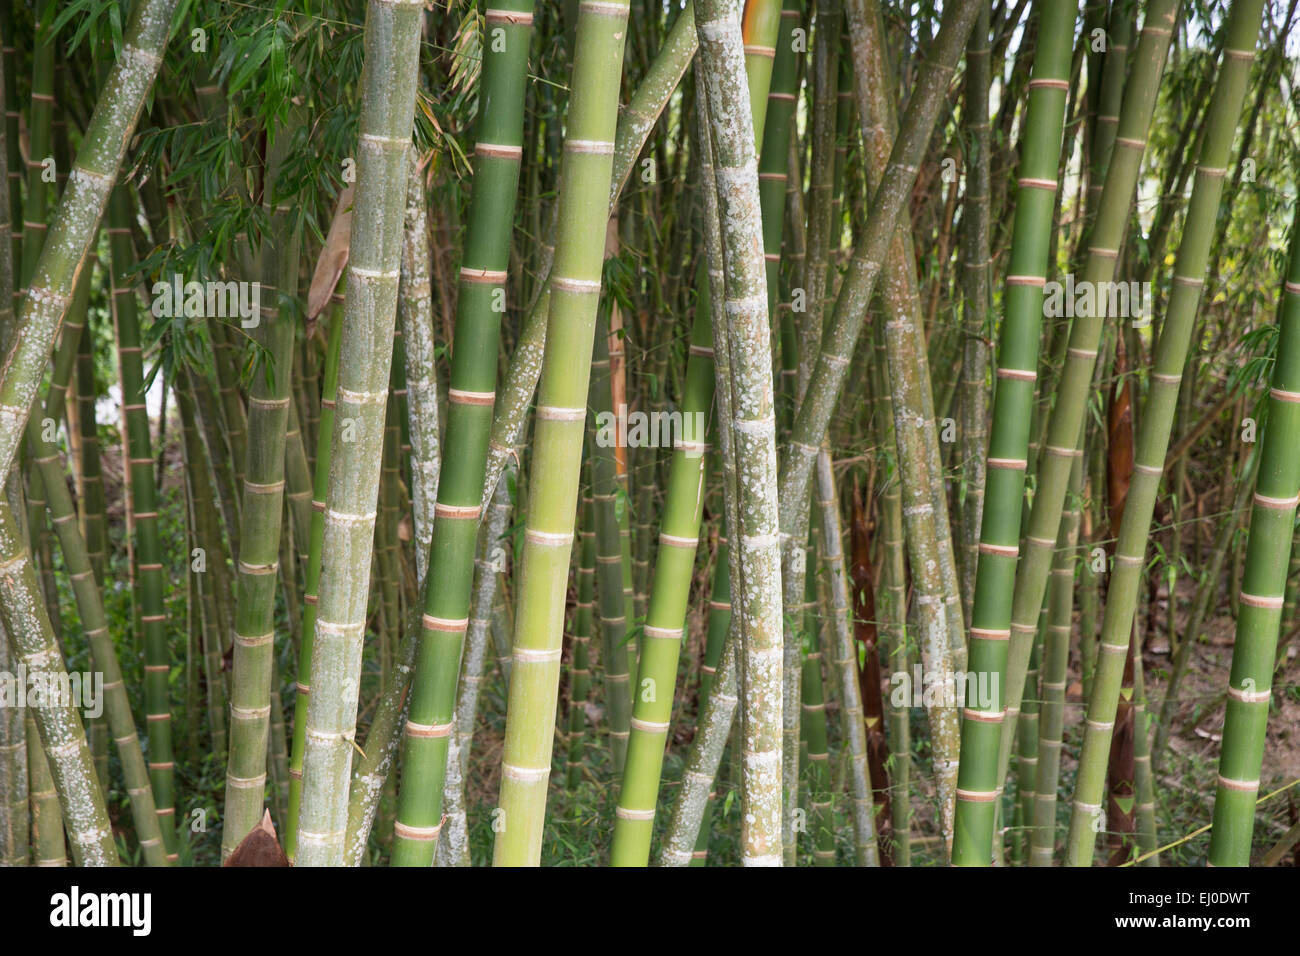 Amérique du Sud, Amérique latine, Colombie, bambou, bambou, plantes, Cannes Banque D'Images